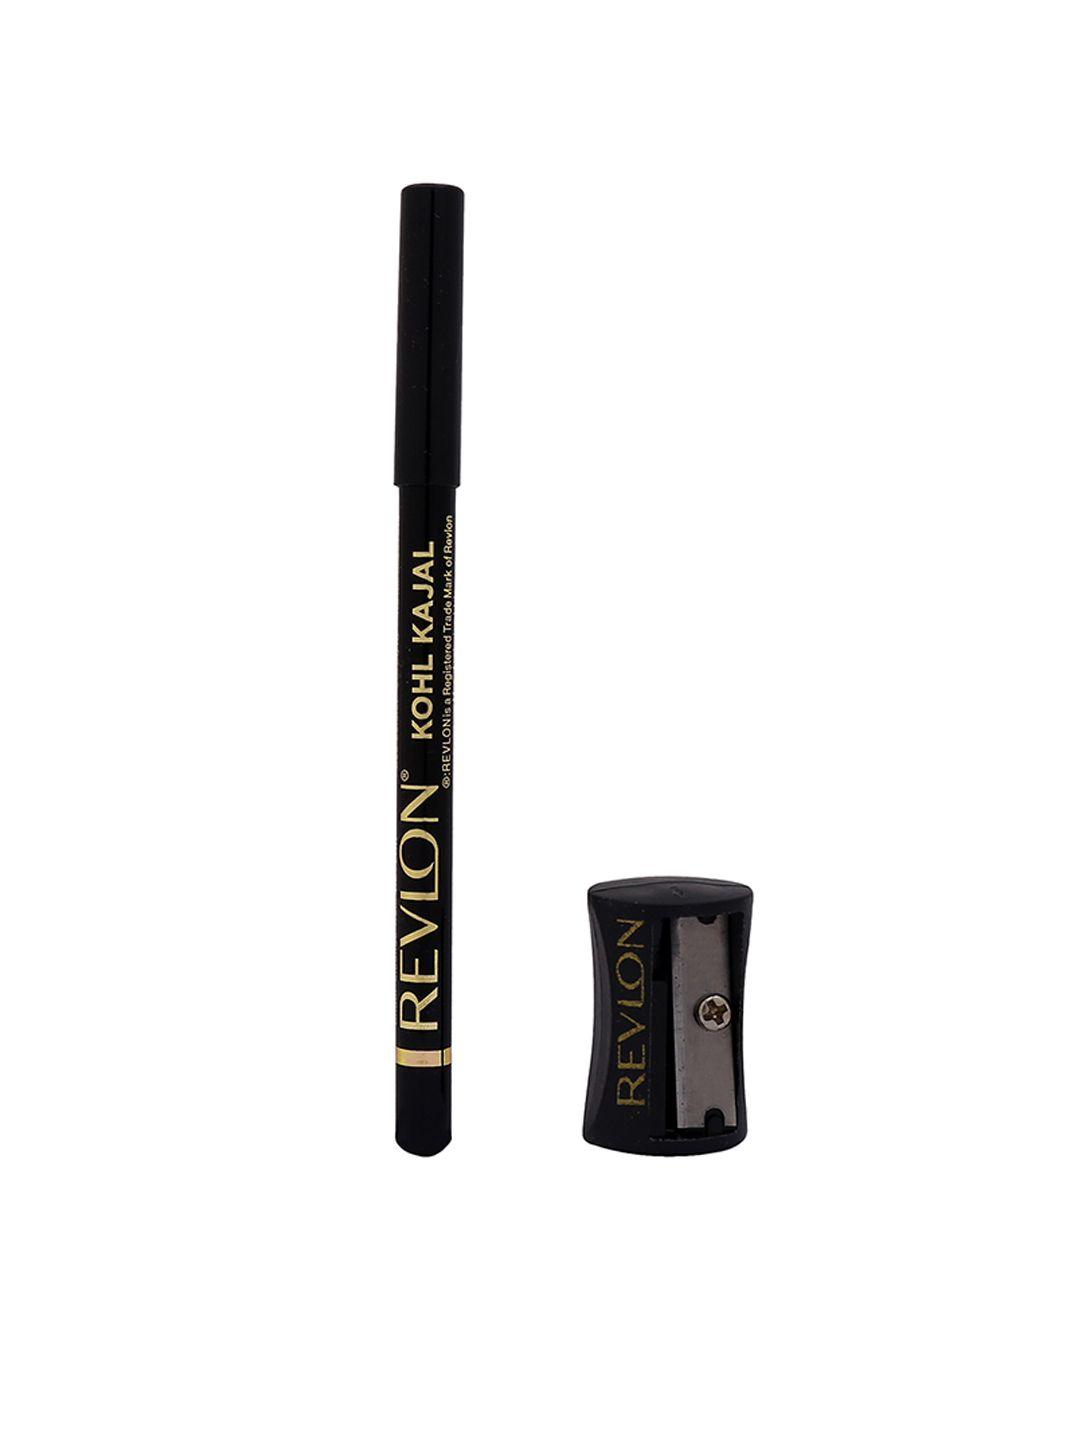 revlon matte kohl kajal eyeliner pencil 011 black with sharpener